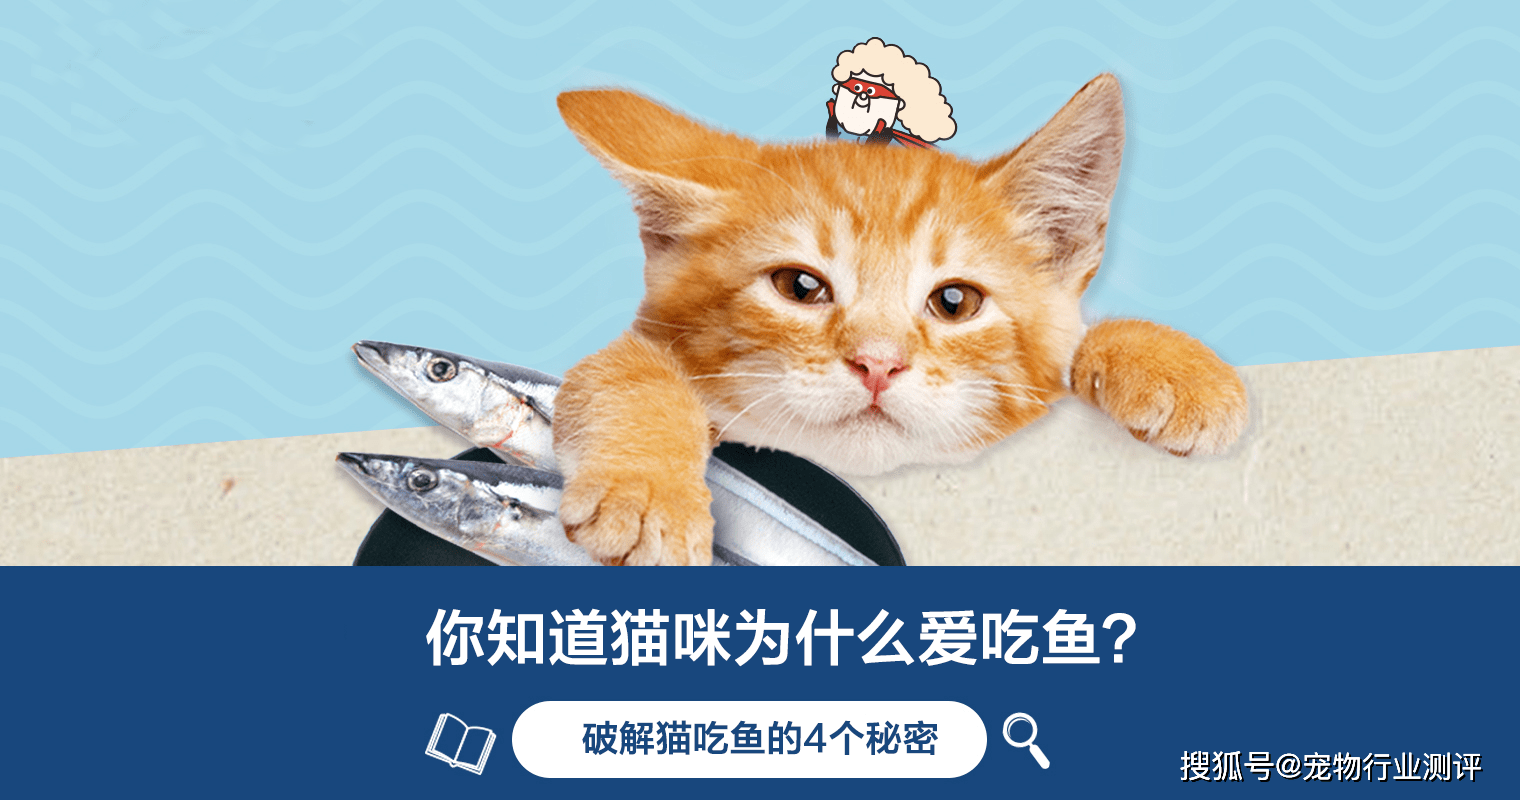 幸福就是猫吃鱼桌面背景高清大图预览1680x1050_动物壁纸下载_墨鱼部落格